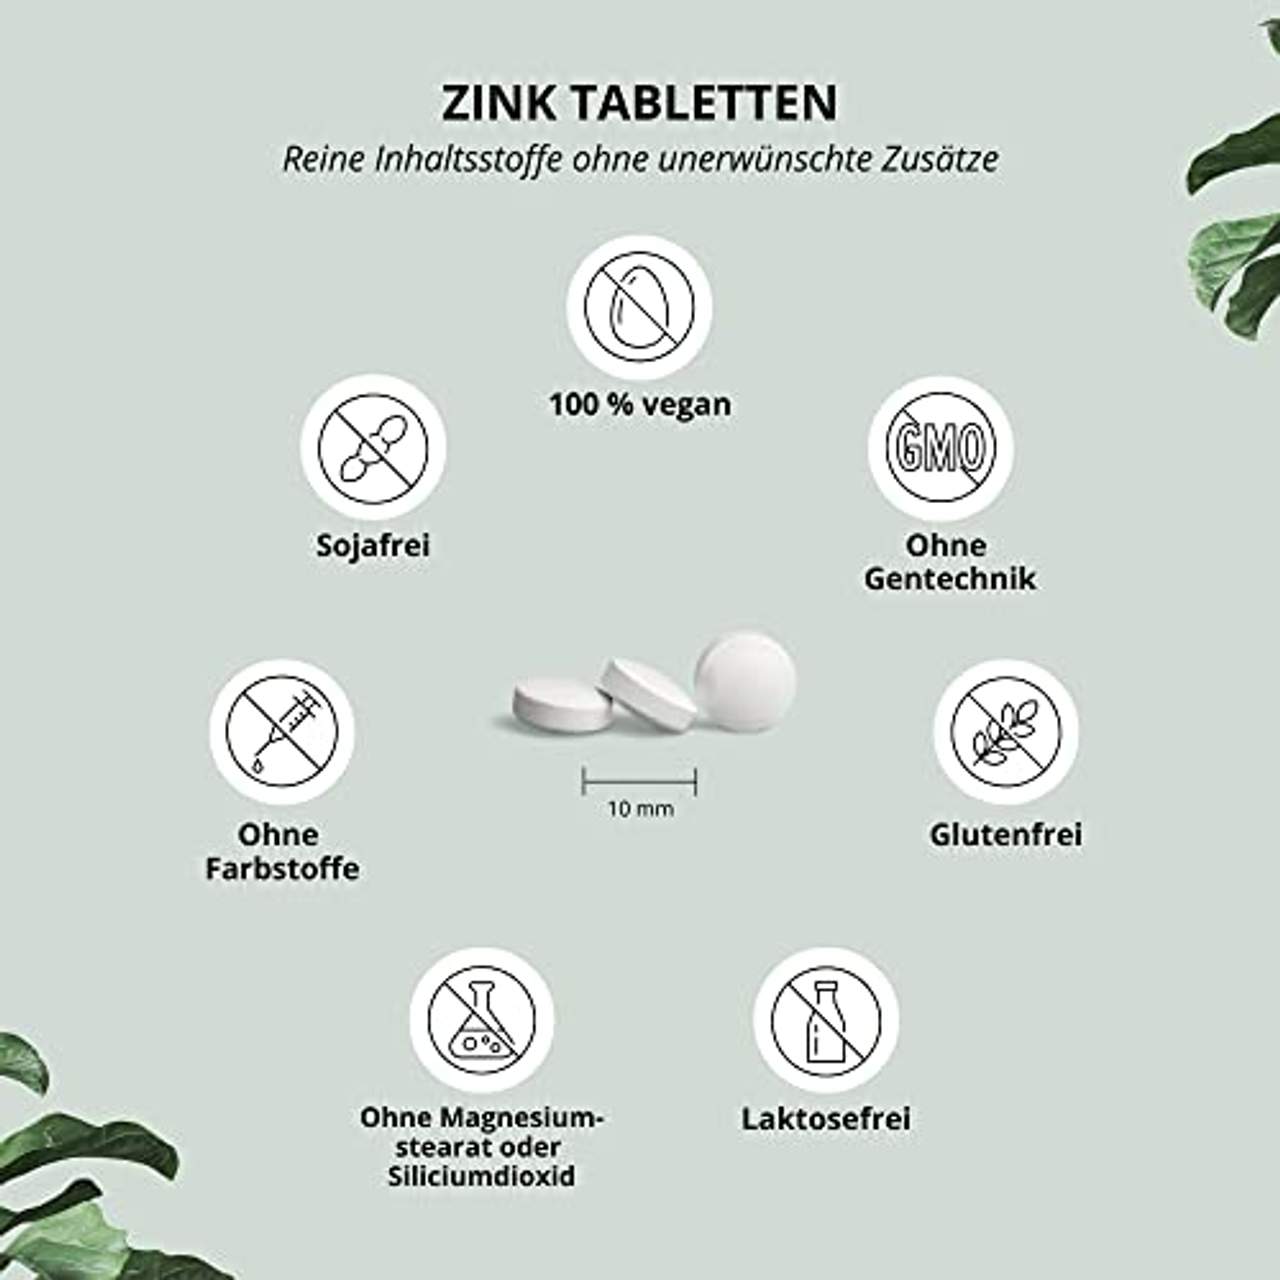 Nutri + Zink Tabletten 25mg